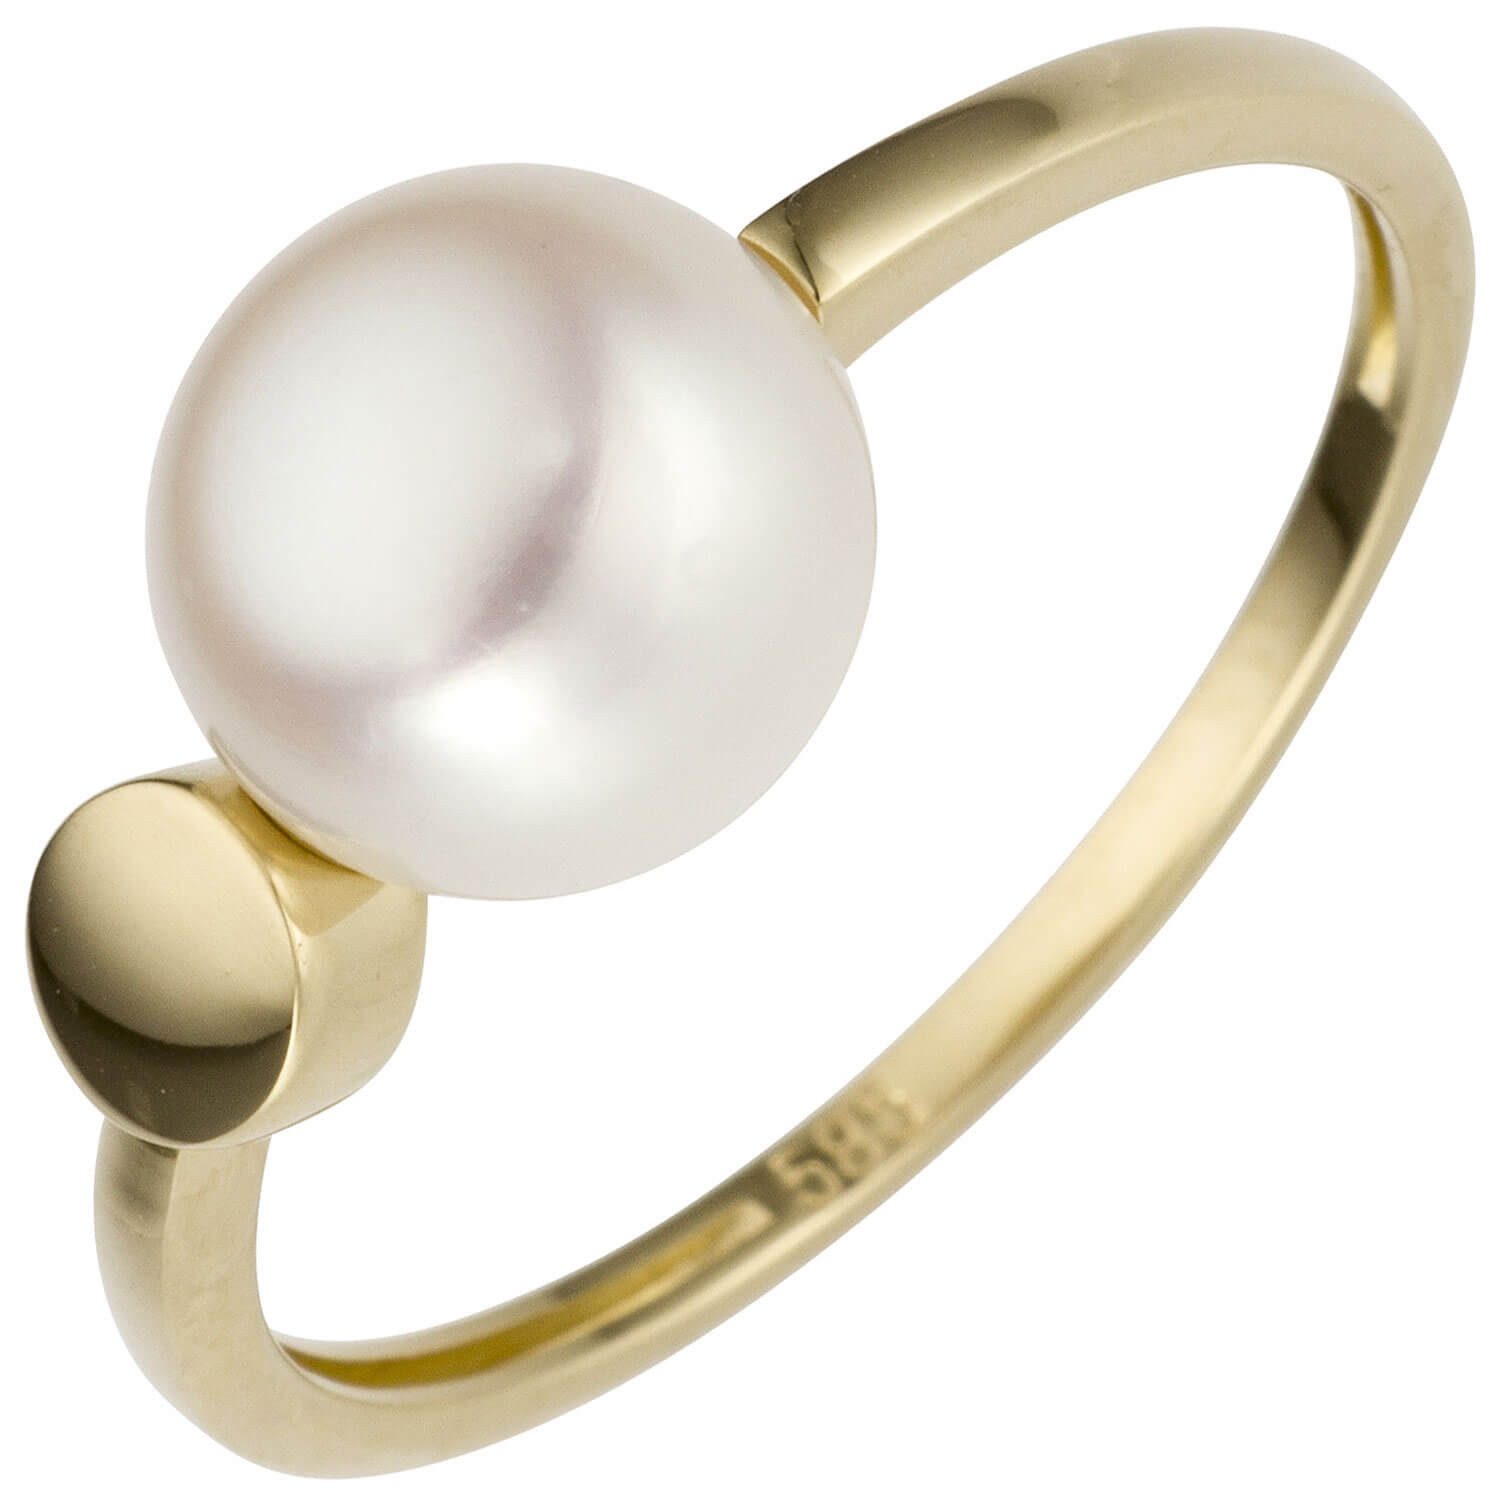 Schmuck Krone Silberring Ring aus 585 Gelbgold mit Süßwasser Perle weiß, Gold 585